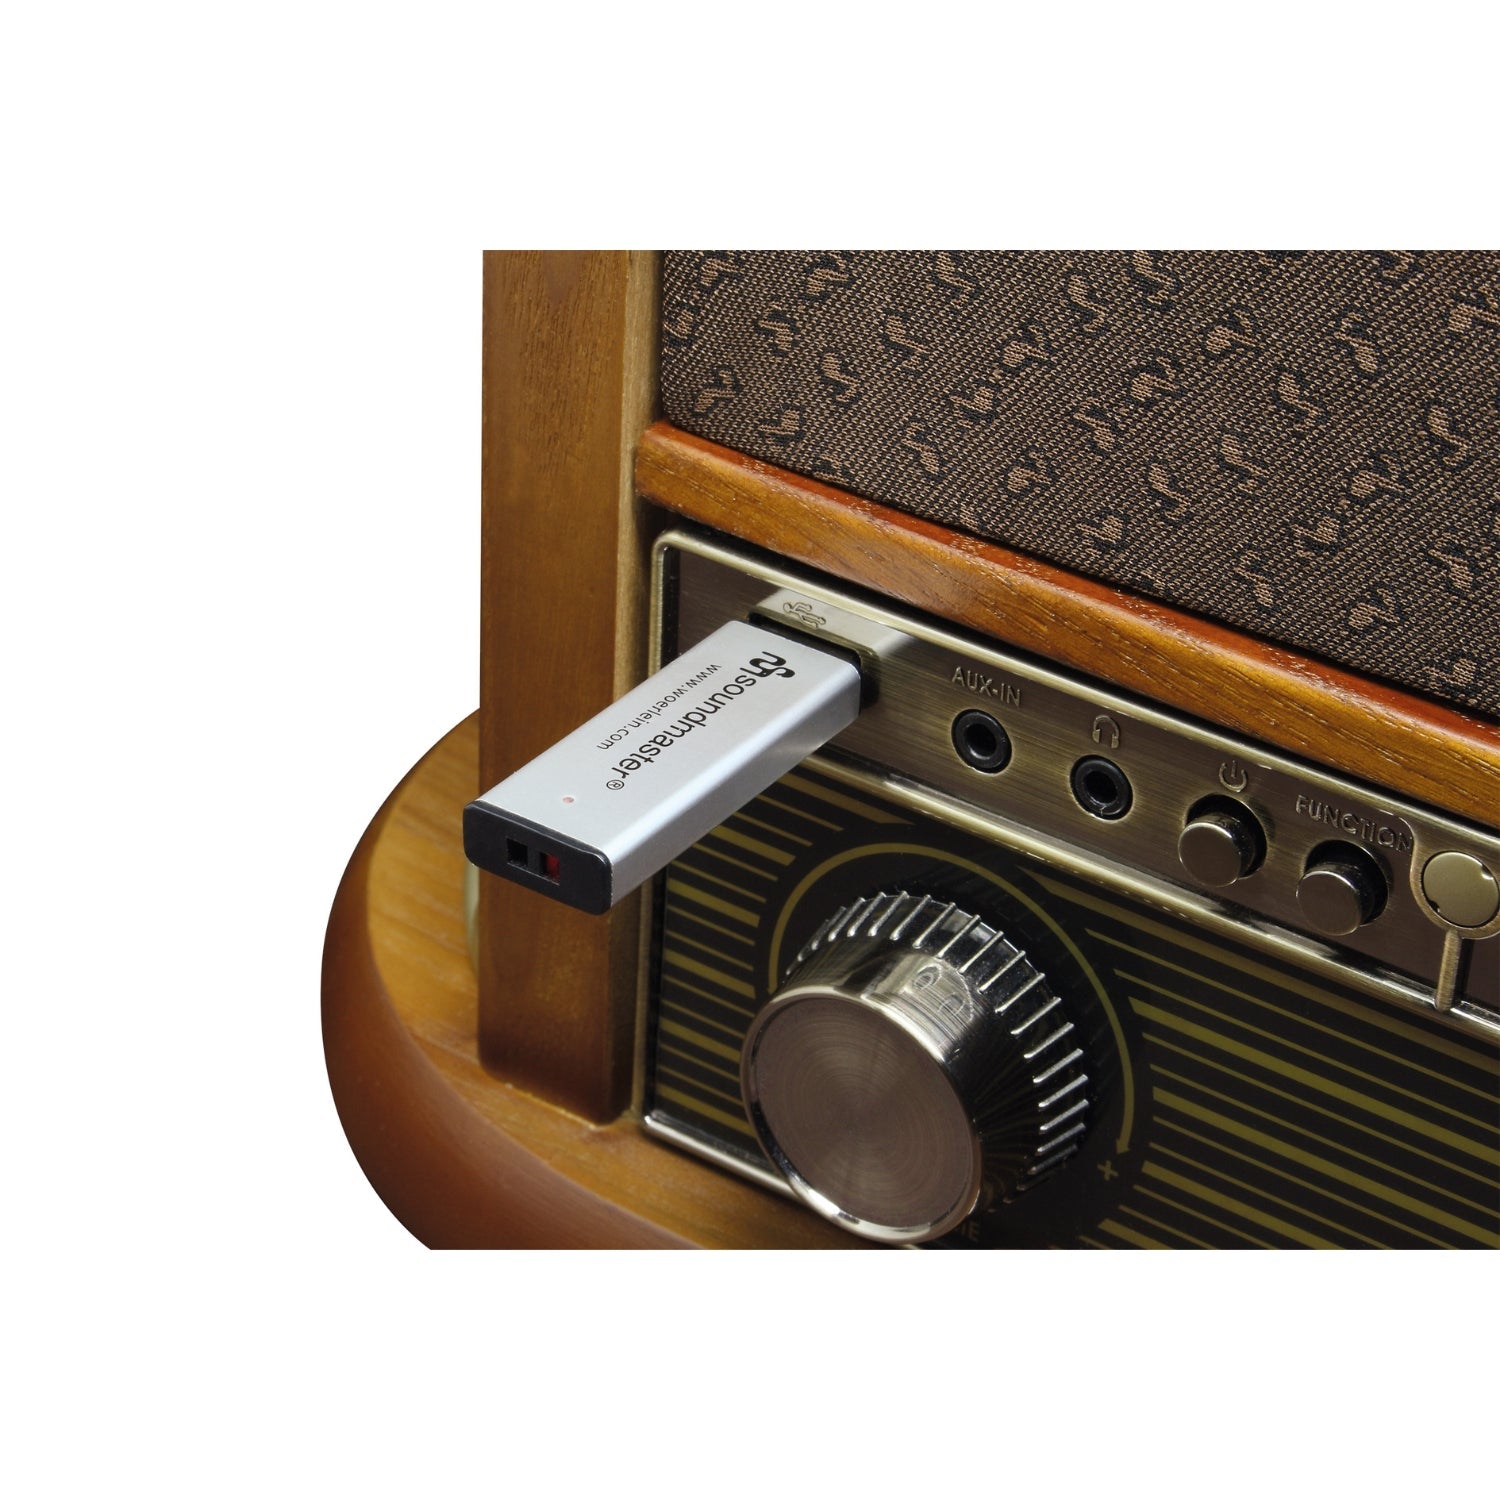 Soundmaster NR546BR set avec socle SF510 nostalgie stéréo DAB+/FM tourne-disque radio numérique avec système de micro magnétique Audio Technica CD/MP3 cassette USB encodage Bluetooth